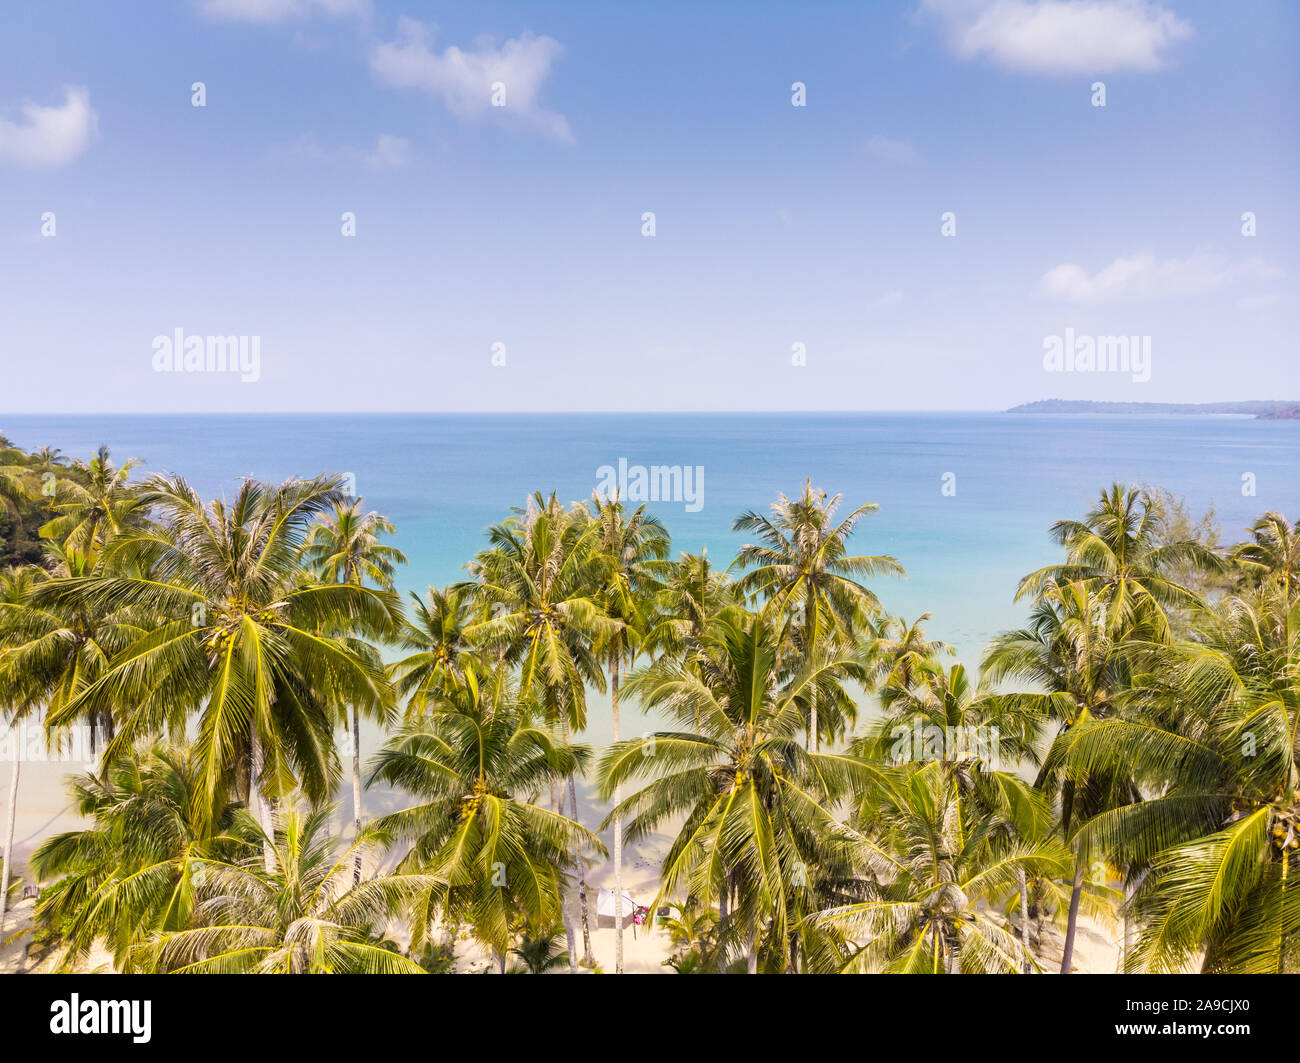 El paisaje tropical con palmeras en la playa y el mar azul, vista aérea desde el avión teledirigido de bahía paraíso exótico, destino de vacaciones vacaciones de verano, bea Foto de stock